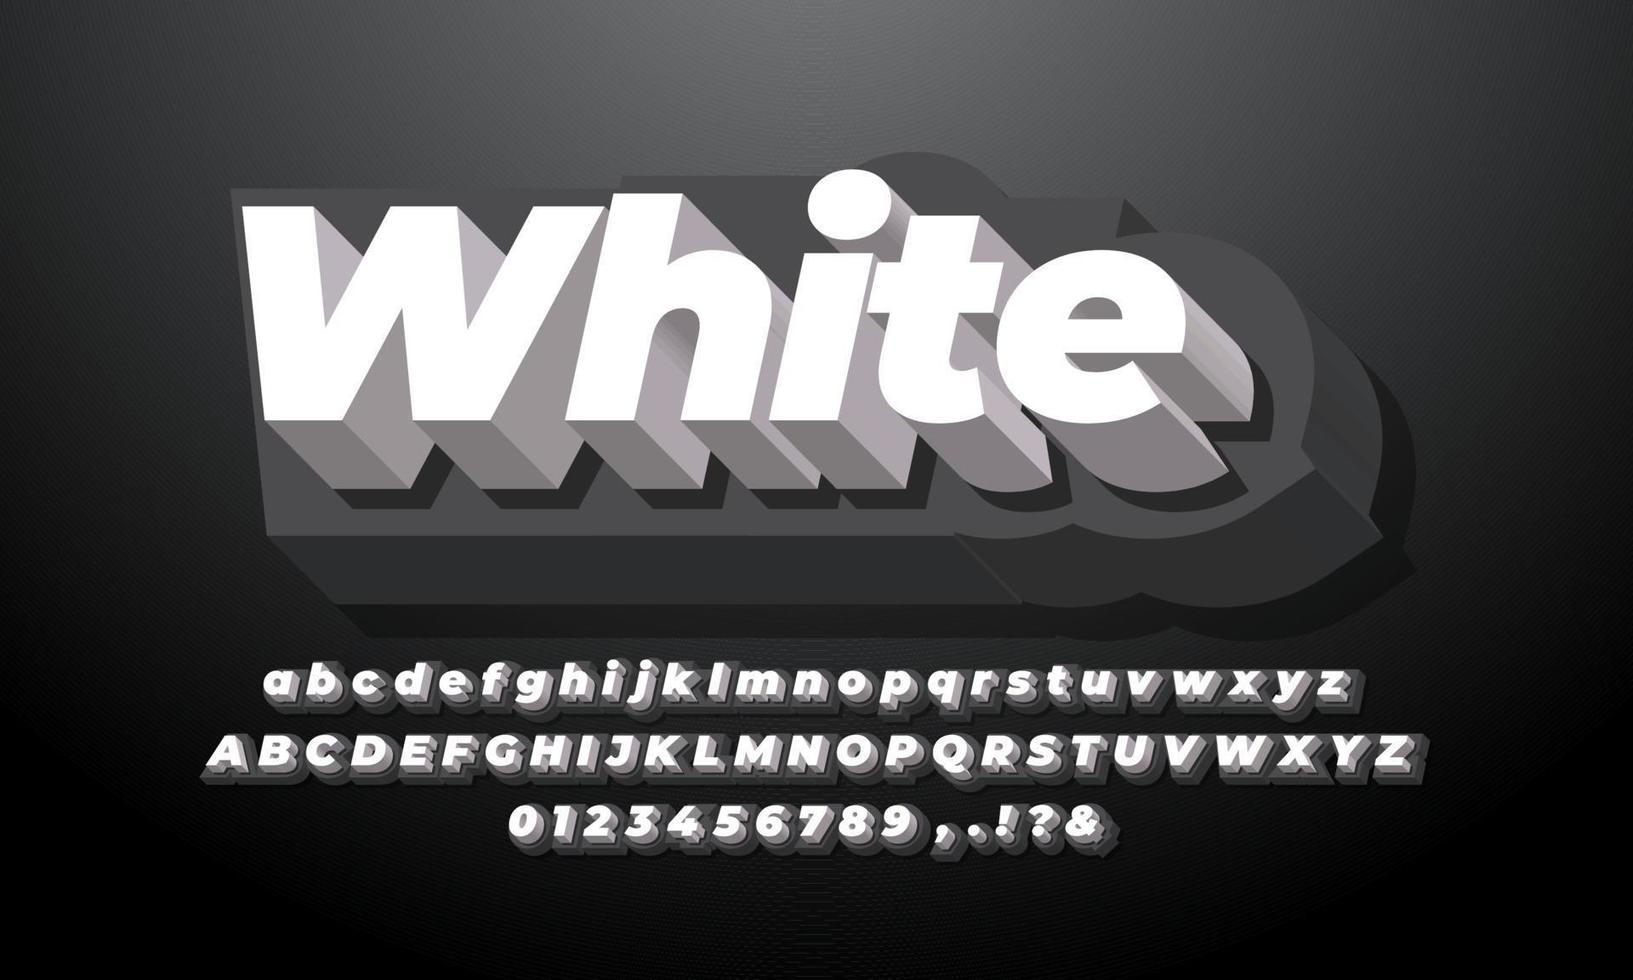 schwarz-weiß 3d modernes sauberes alphabet oder buchstabentexteffekt oder schrifteffektdesign vektor